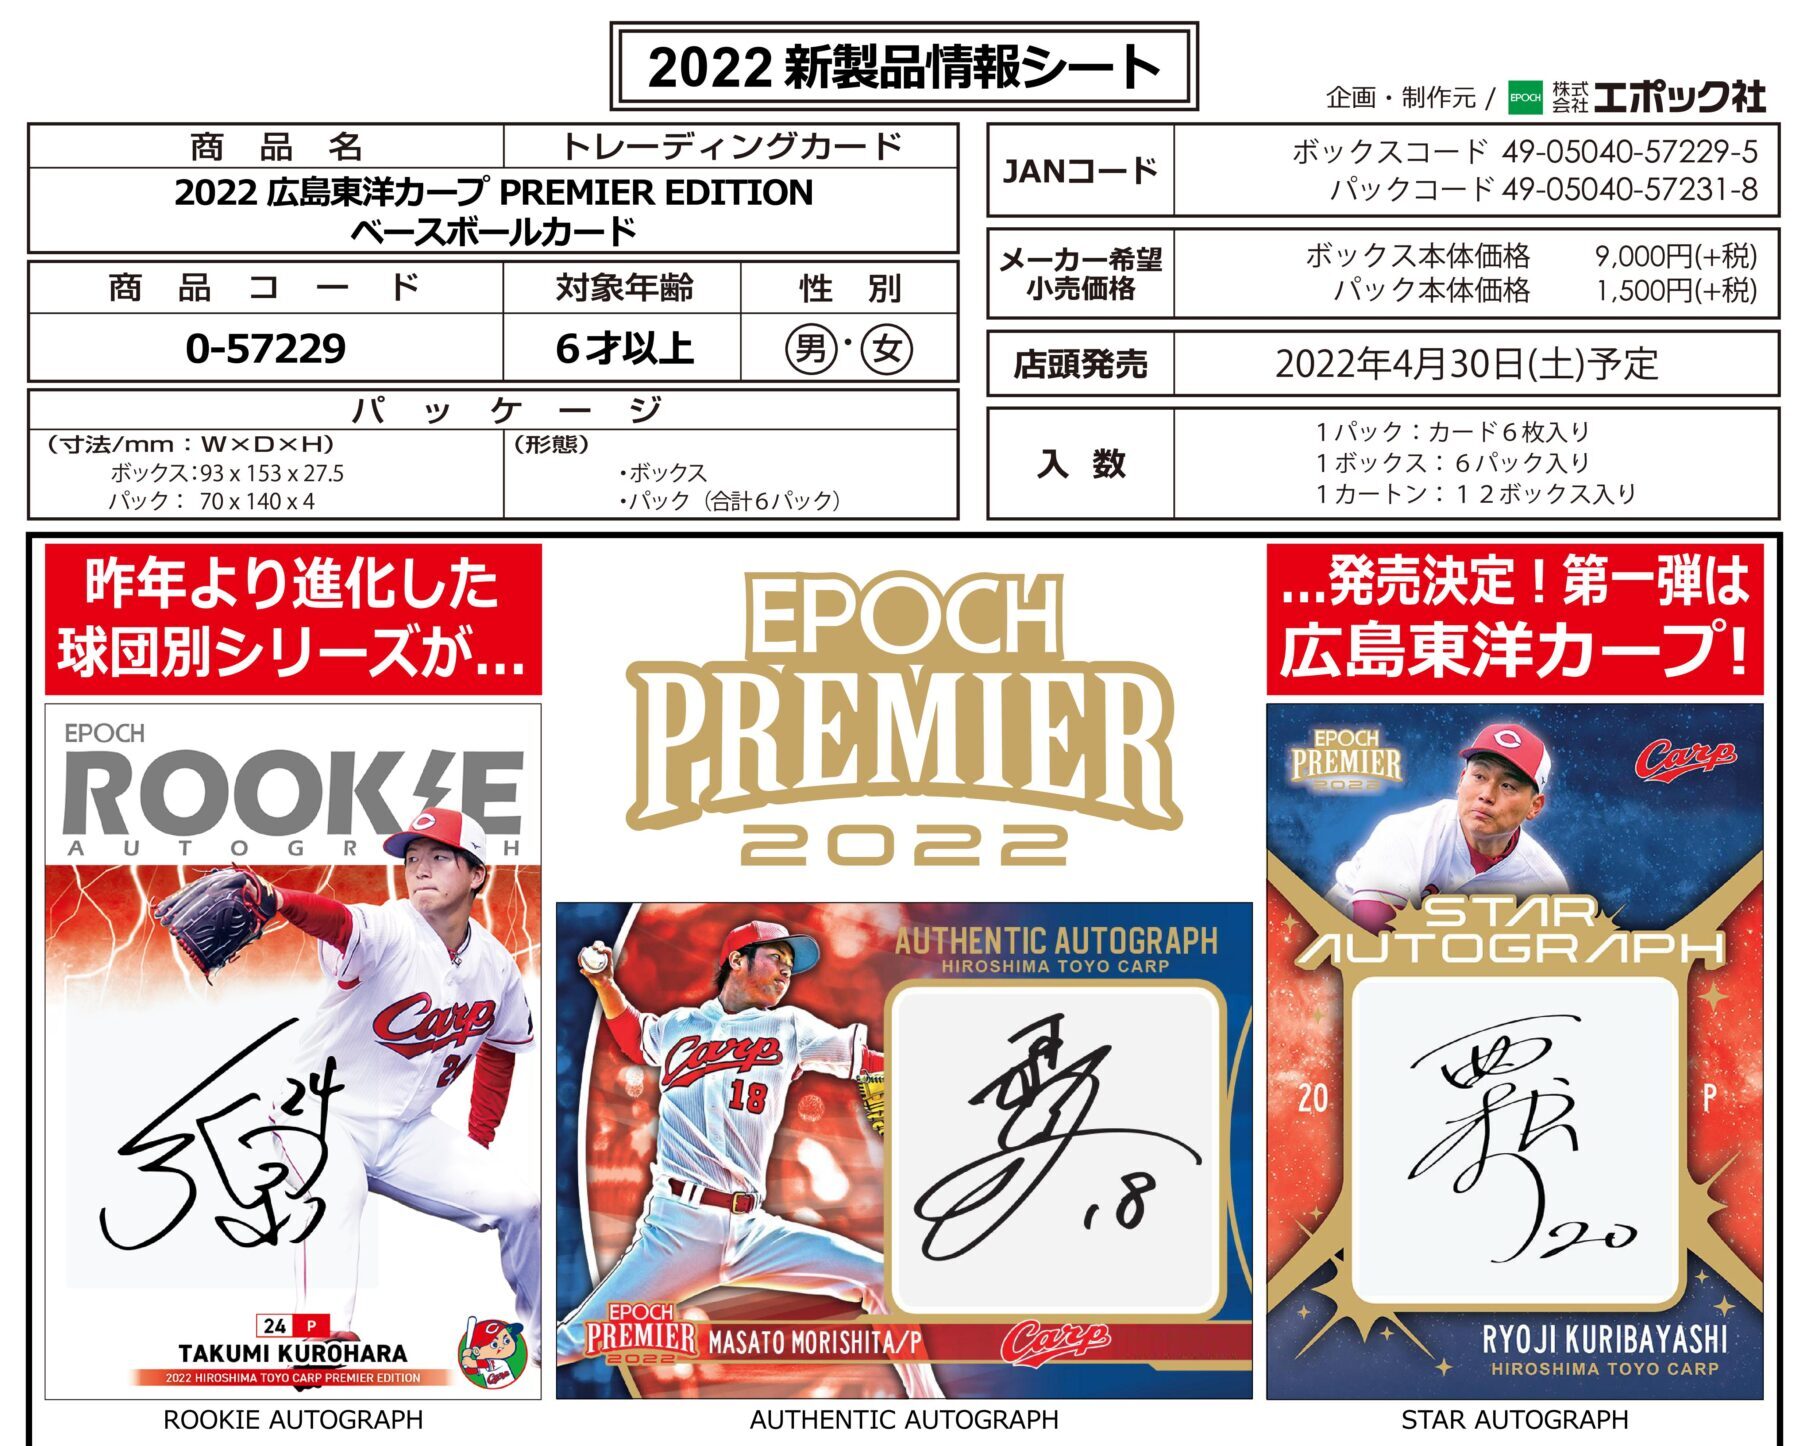 2022 広島東洋カープ PREMIER EDITION ベースボールカード